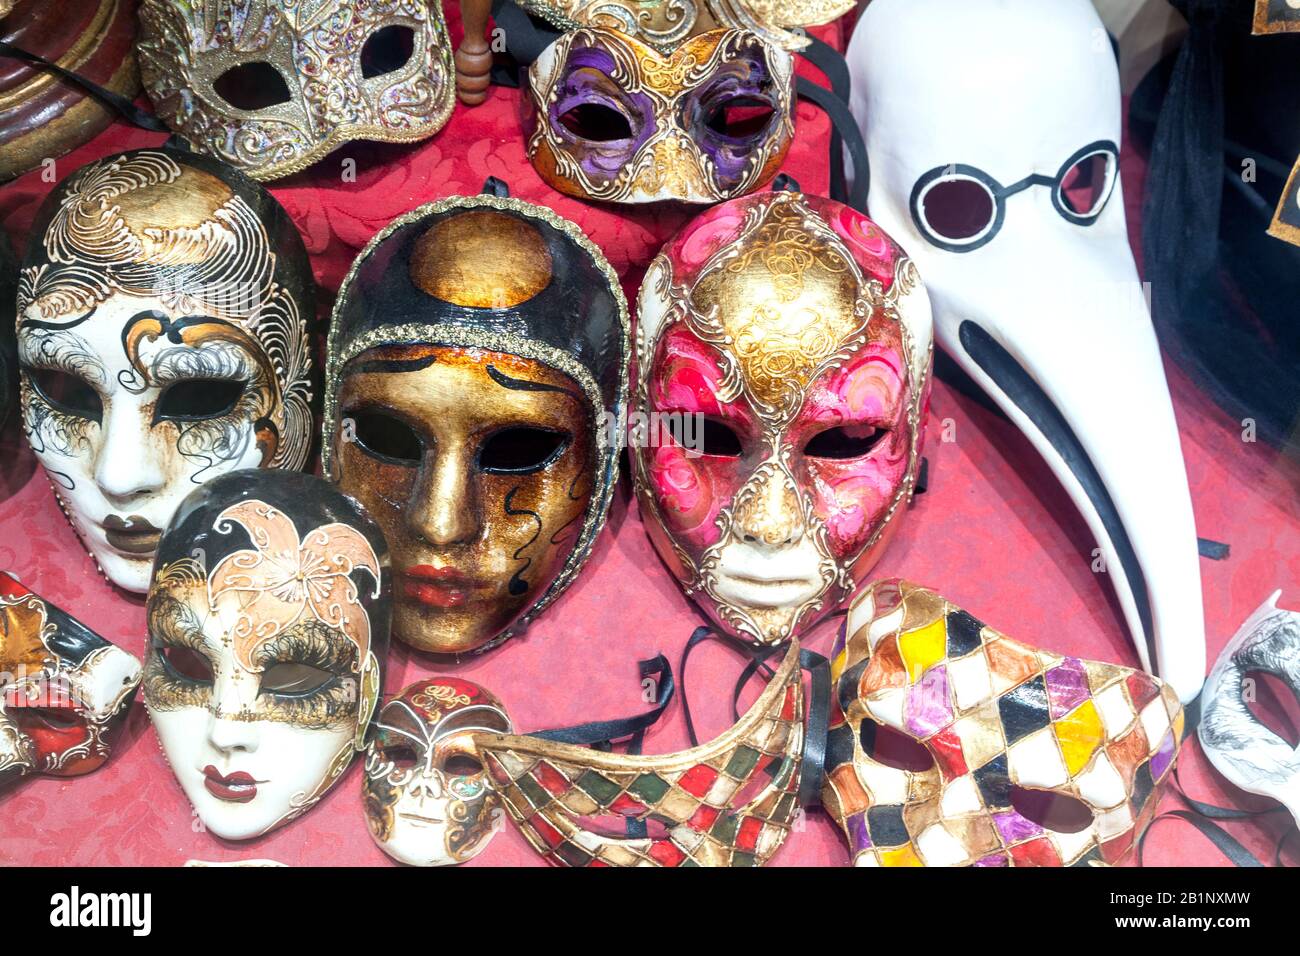 maravillosa máscara ornamentada para el carnaval Foto de stock